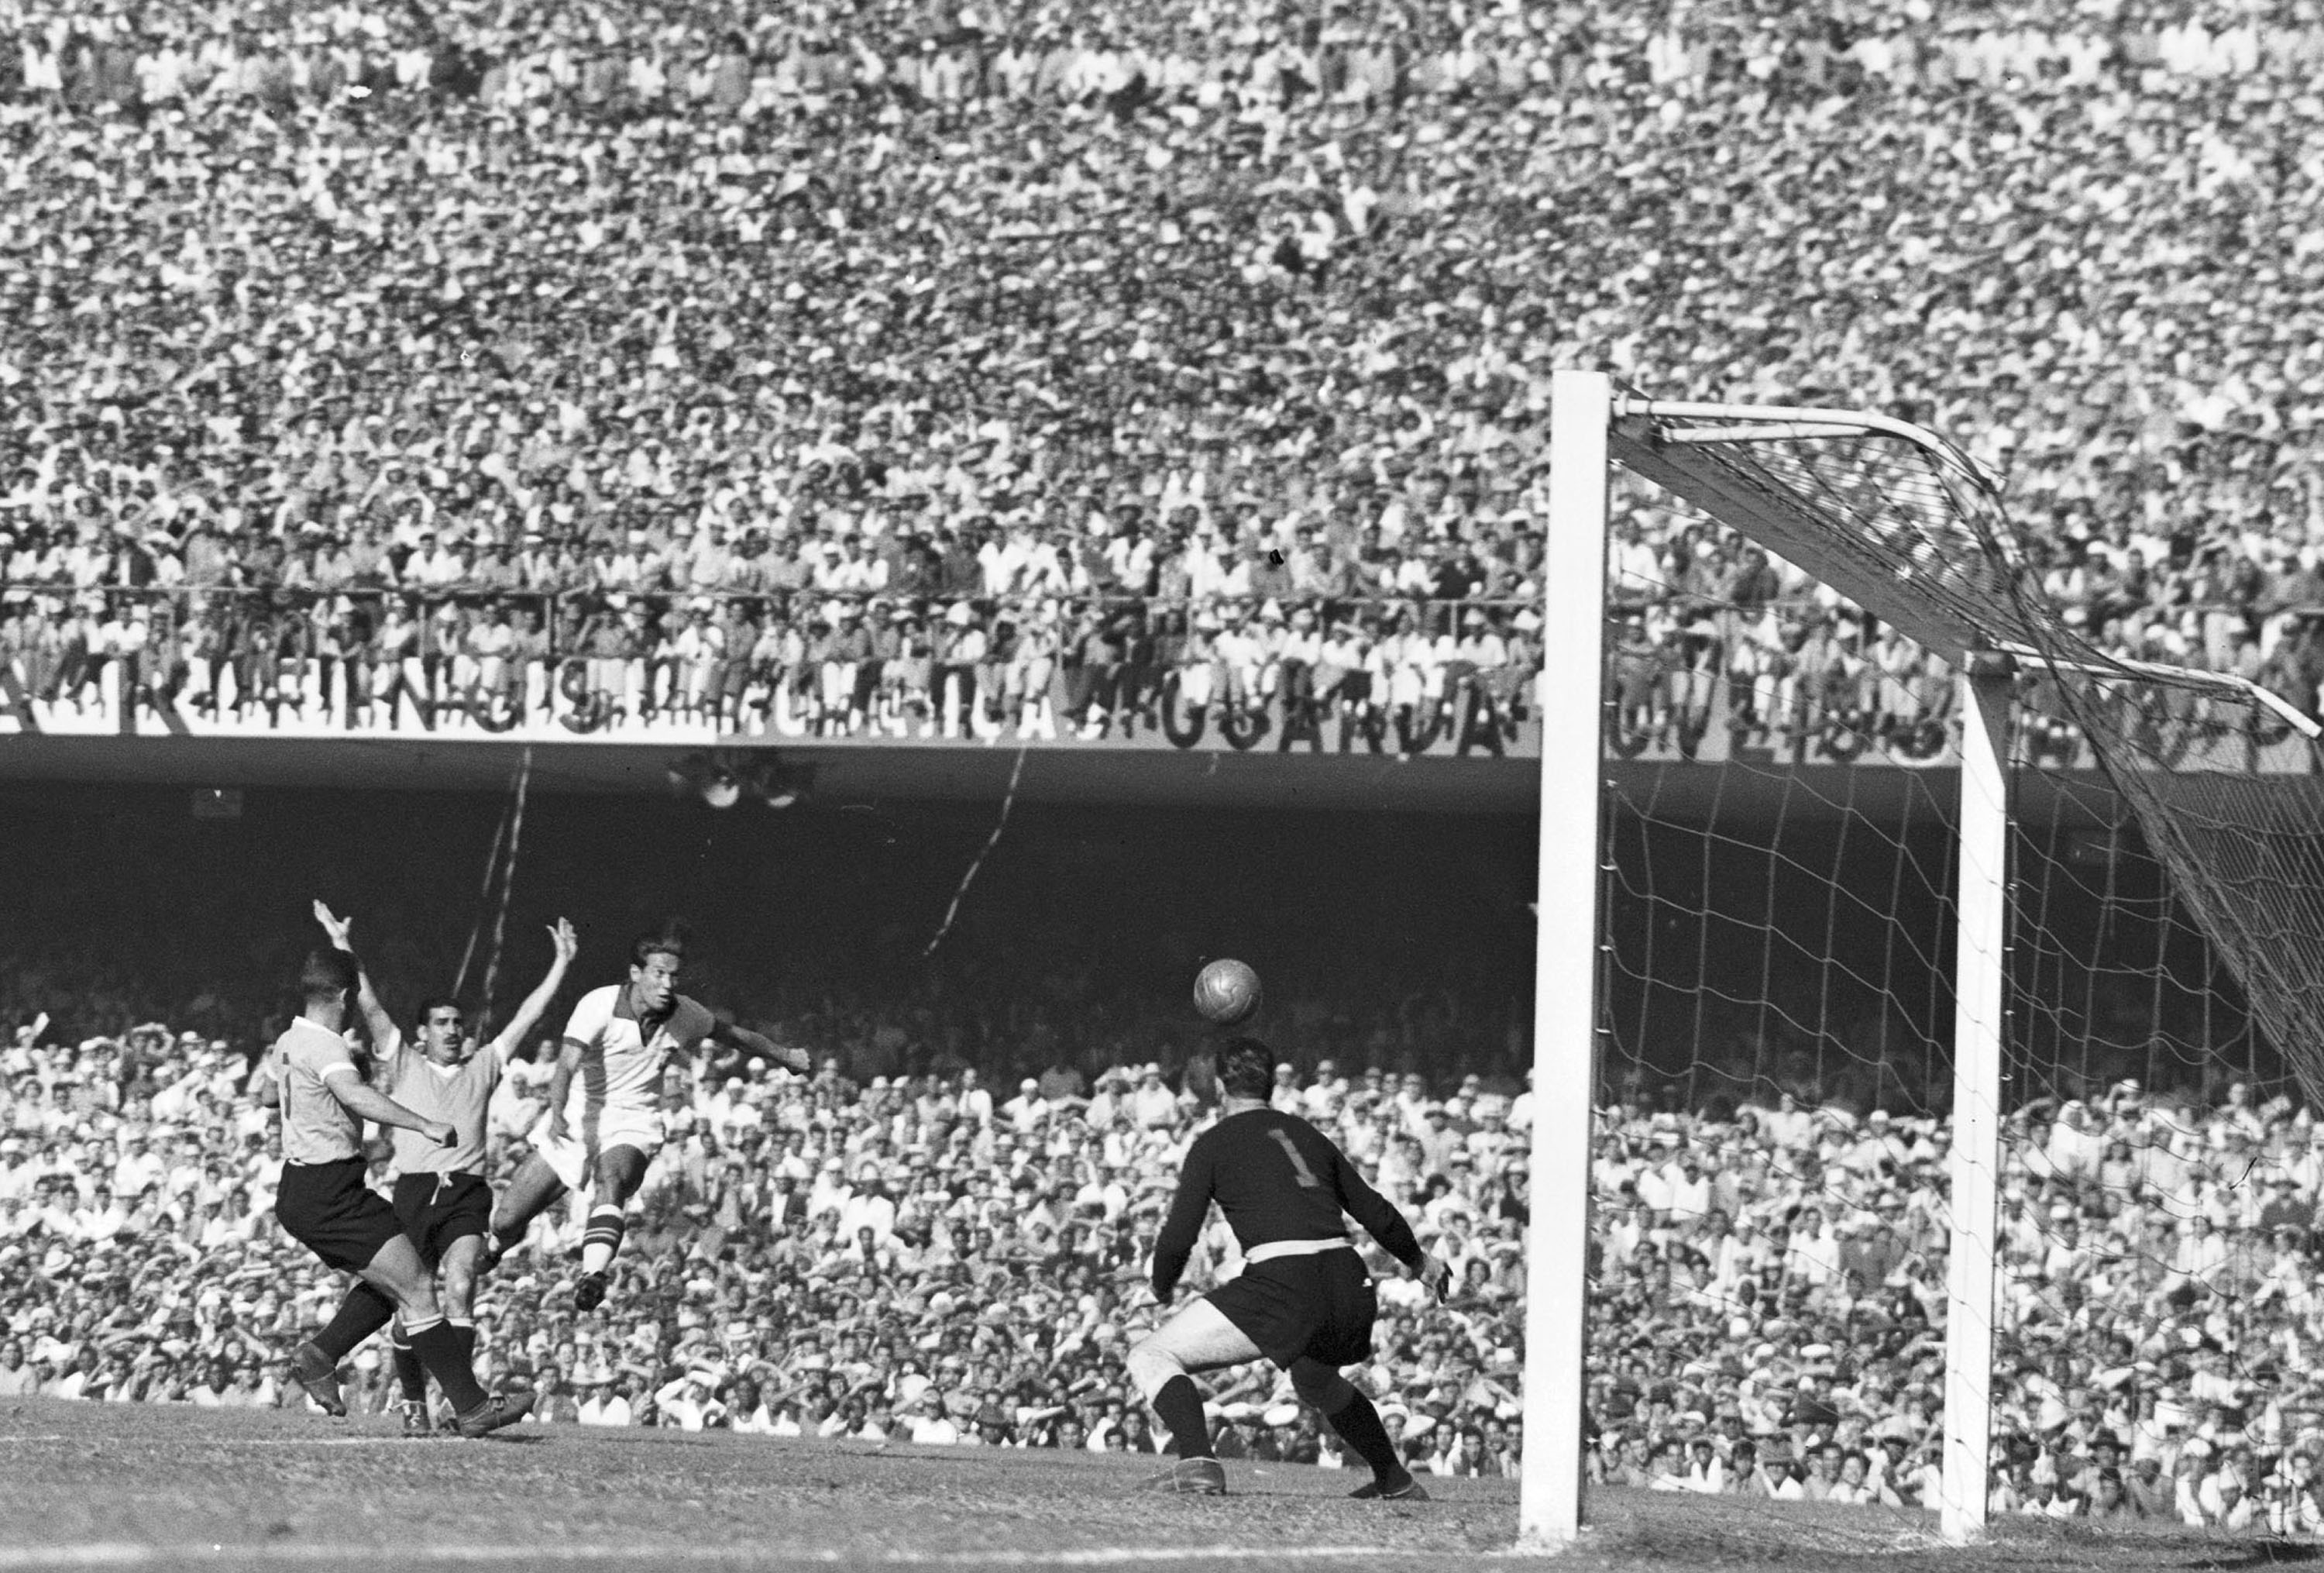 Brasil é derrotado pelo Uruguai no 'Maracanazo' em 1950 - Estadão